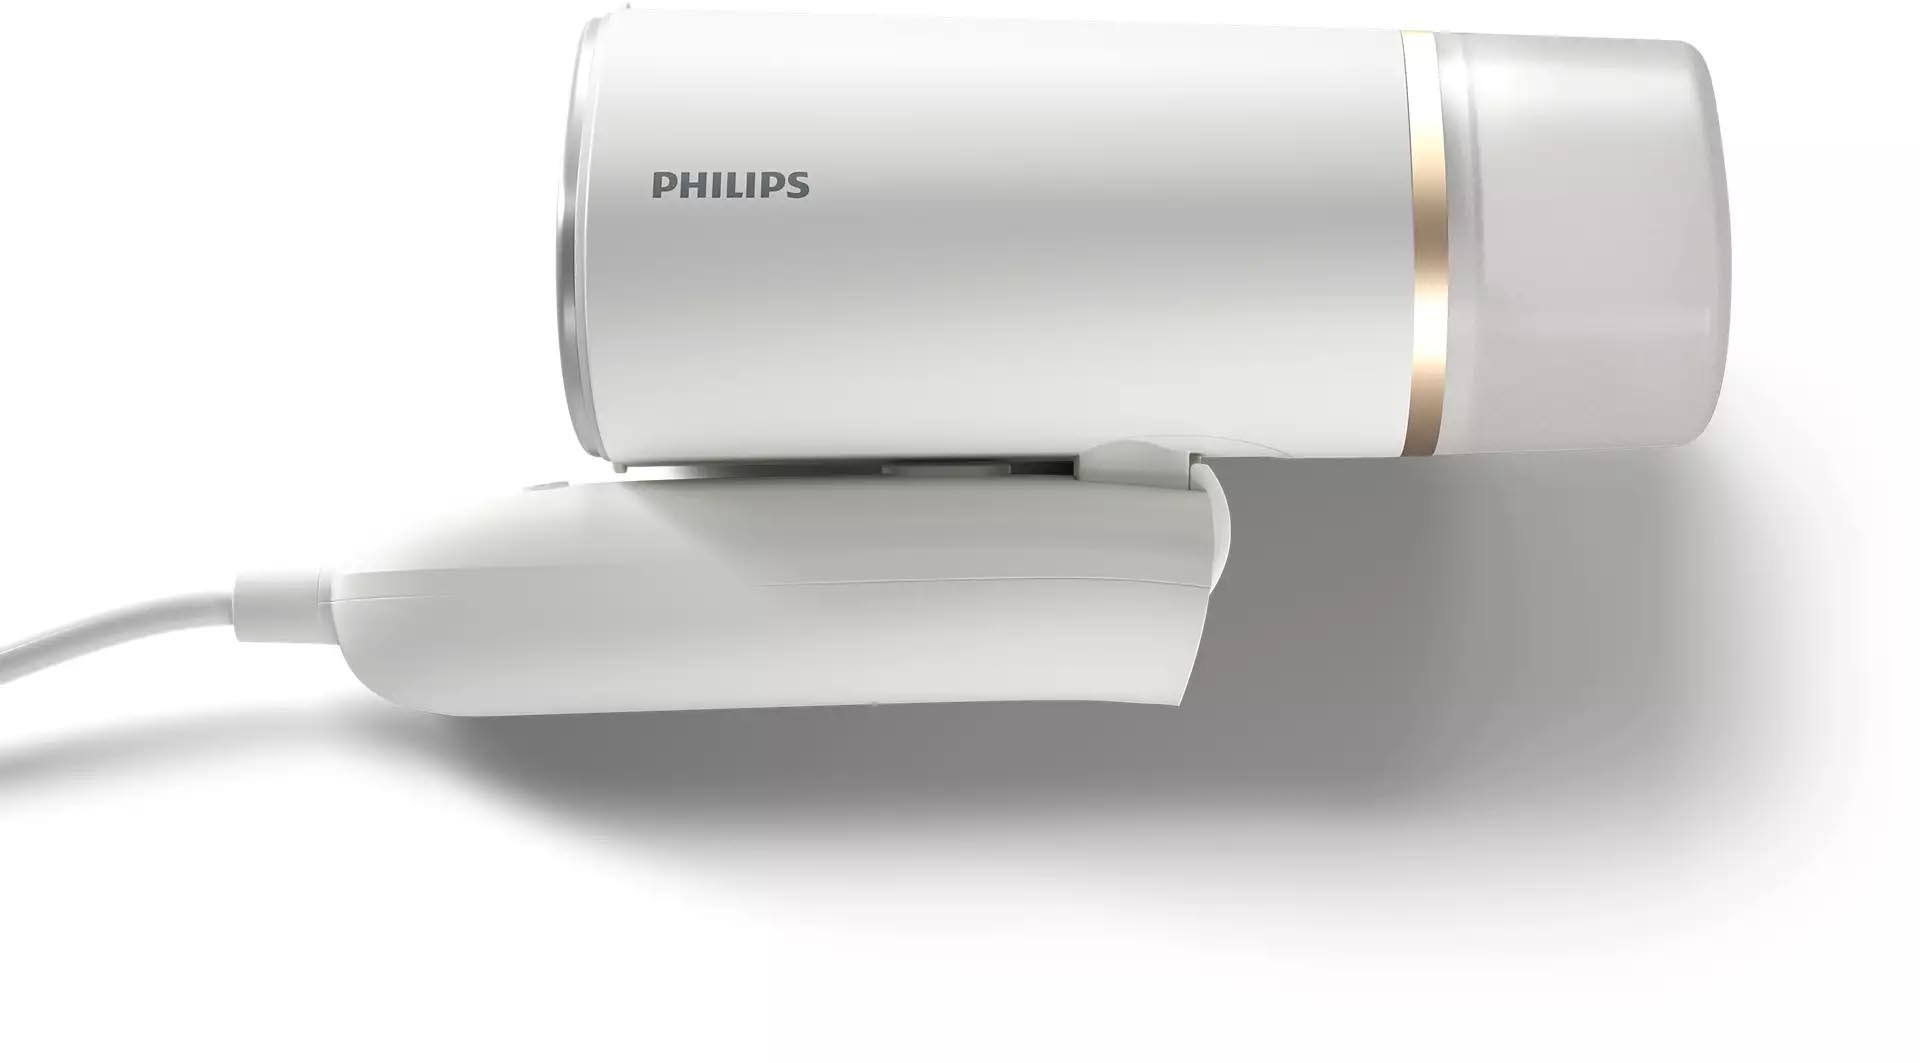 Bàn là hơi nước cầm tay 1000w, nhỏ gọn, diệt khuẩn Philips STH3020/10 - Hàng chính hãng